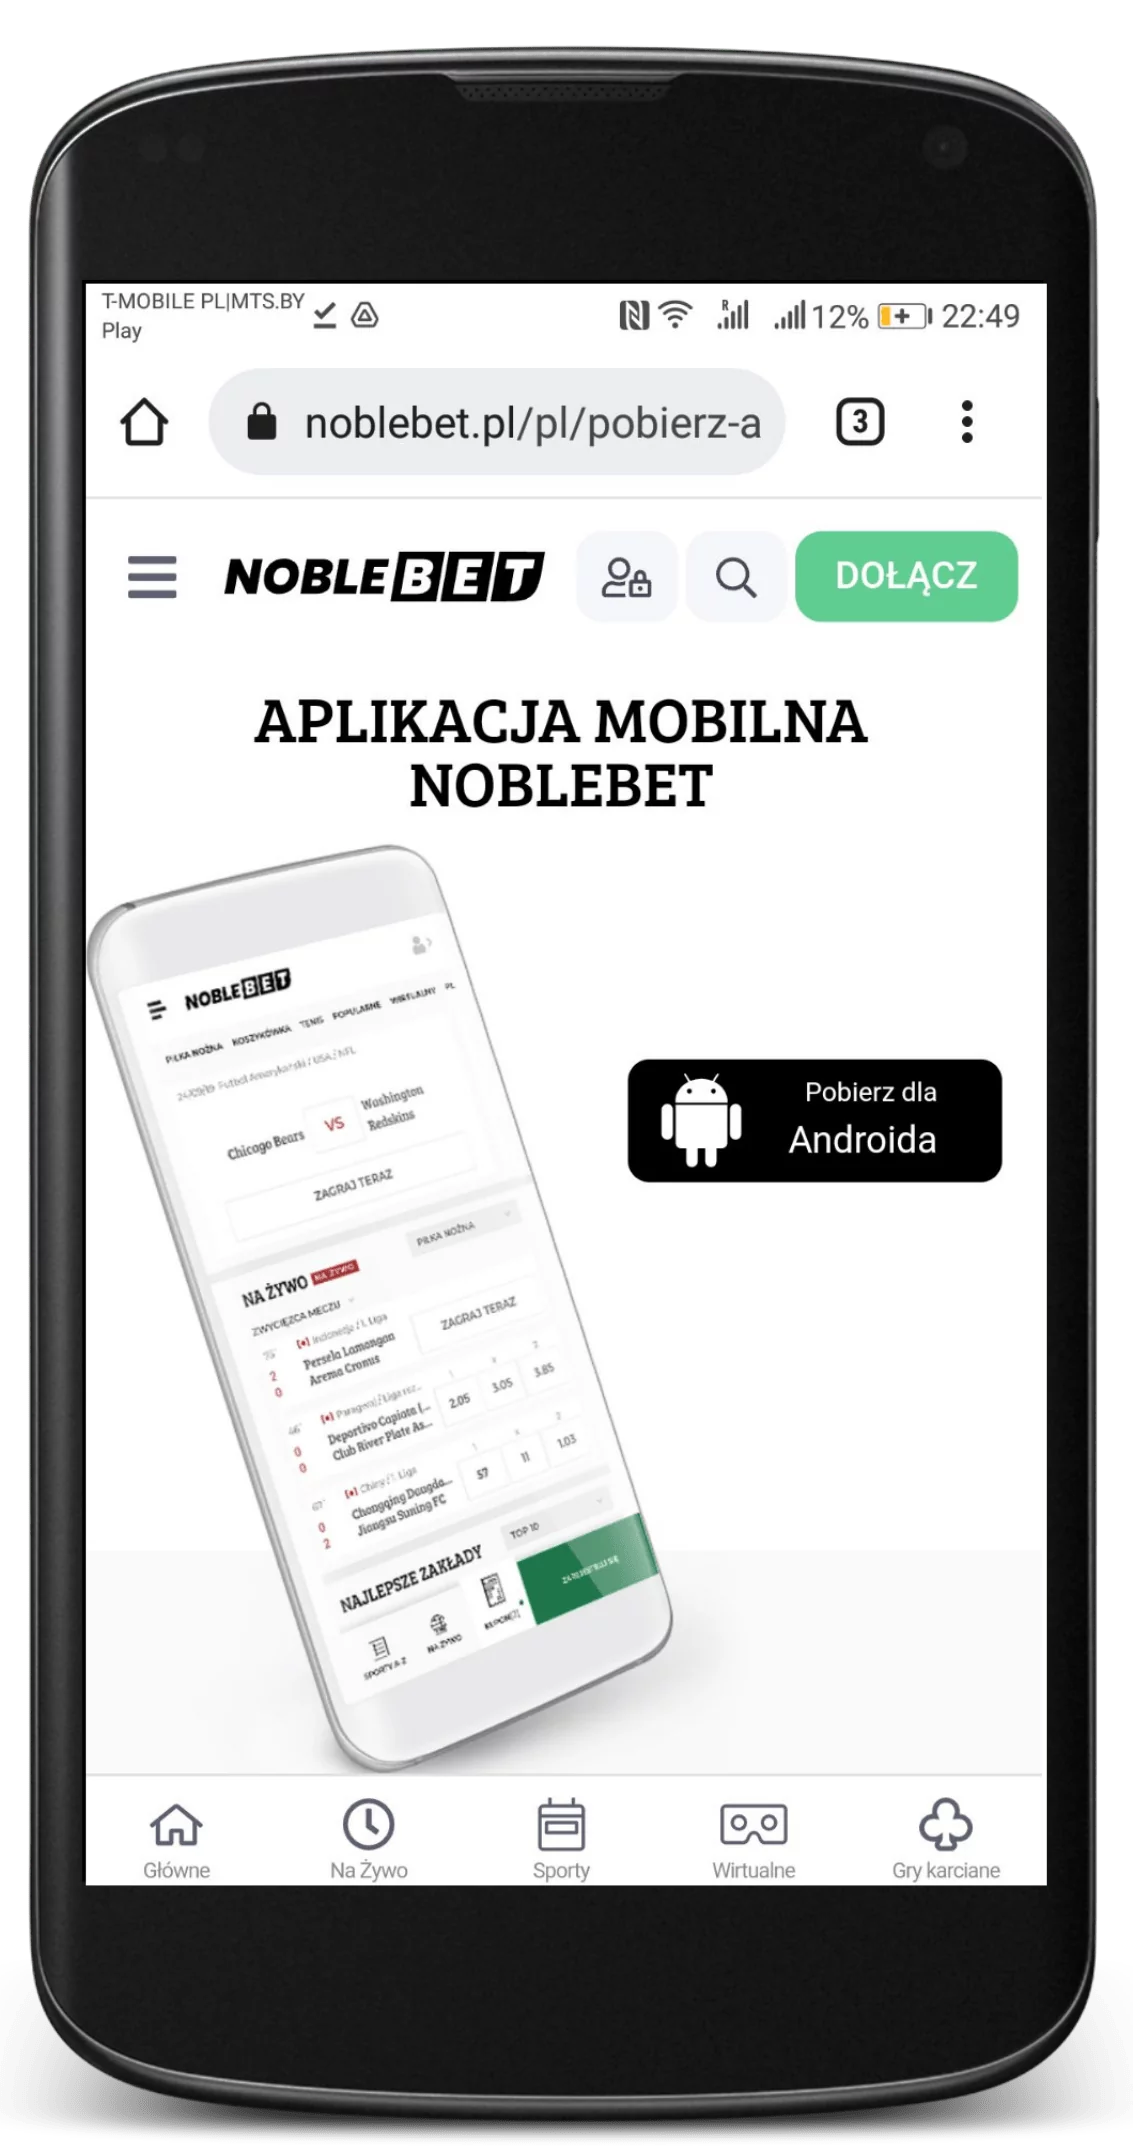 Wejdź na oficjalną stronę legalnego bukmachera Noblebet i przejdź do rozdziału aplikacji mobilnej w menu, żeby pobrać aplikację mobilną na Android